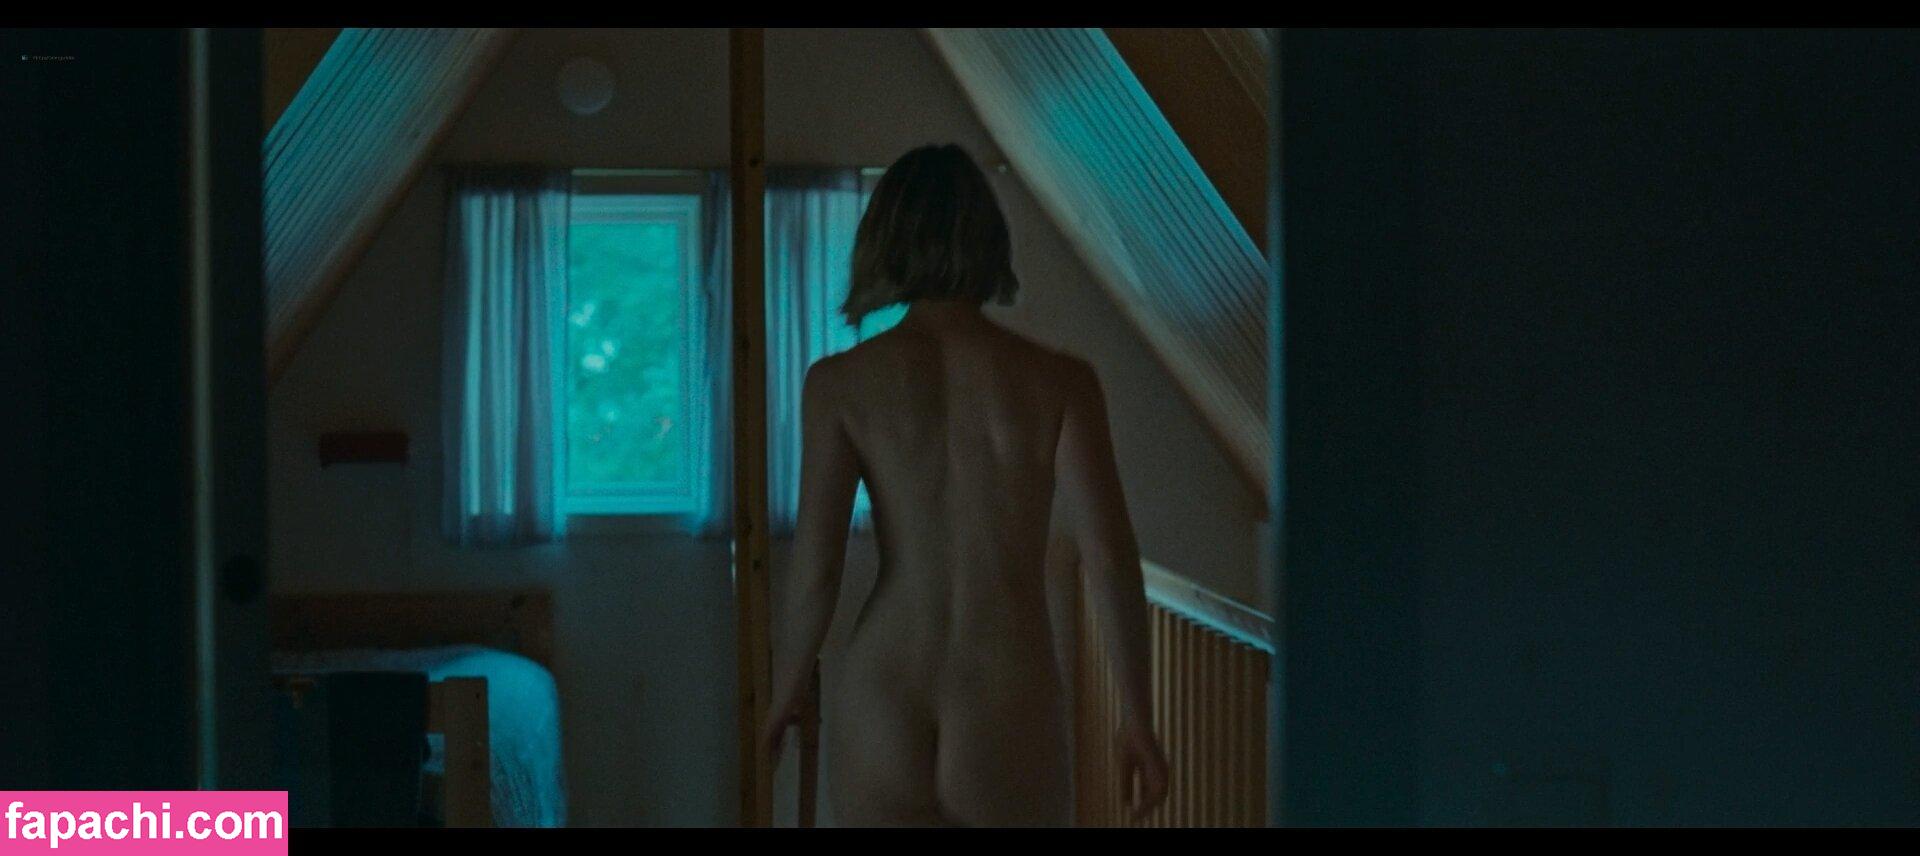 Mia Wasikowska / mia_wasikowska_ leaked nude photo #0017 from OnlyFans/Patreon